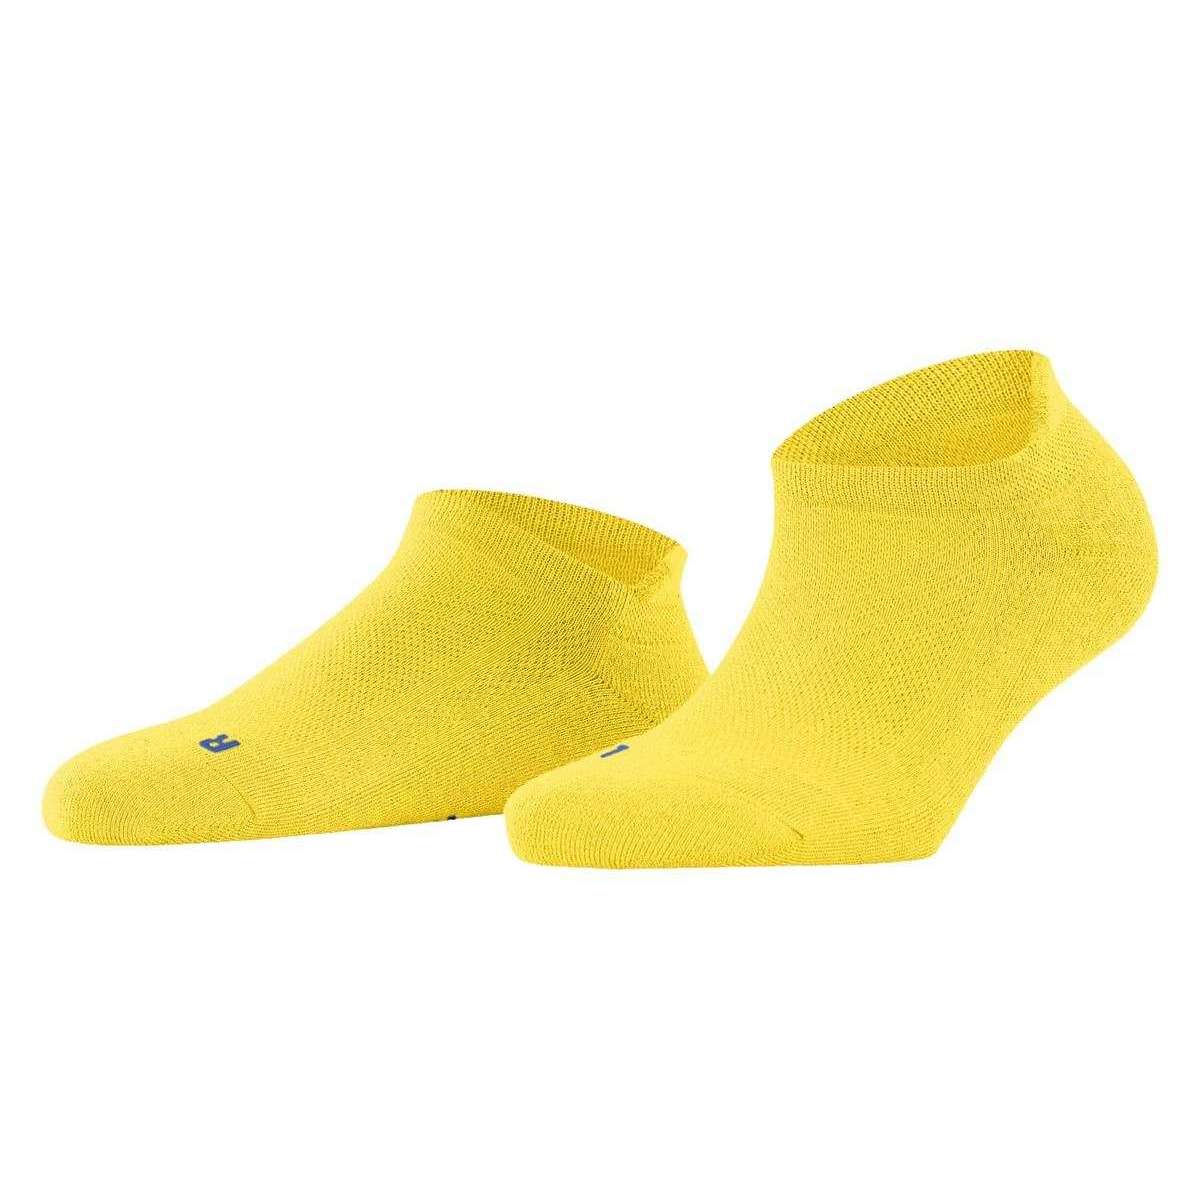 Falke Cool Kick Sneaker Socks - Sunshine Yellow - Large - 5.5-7.5 UK | 8-9.5 US | 39-41 EUR